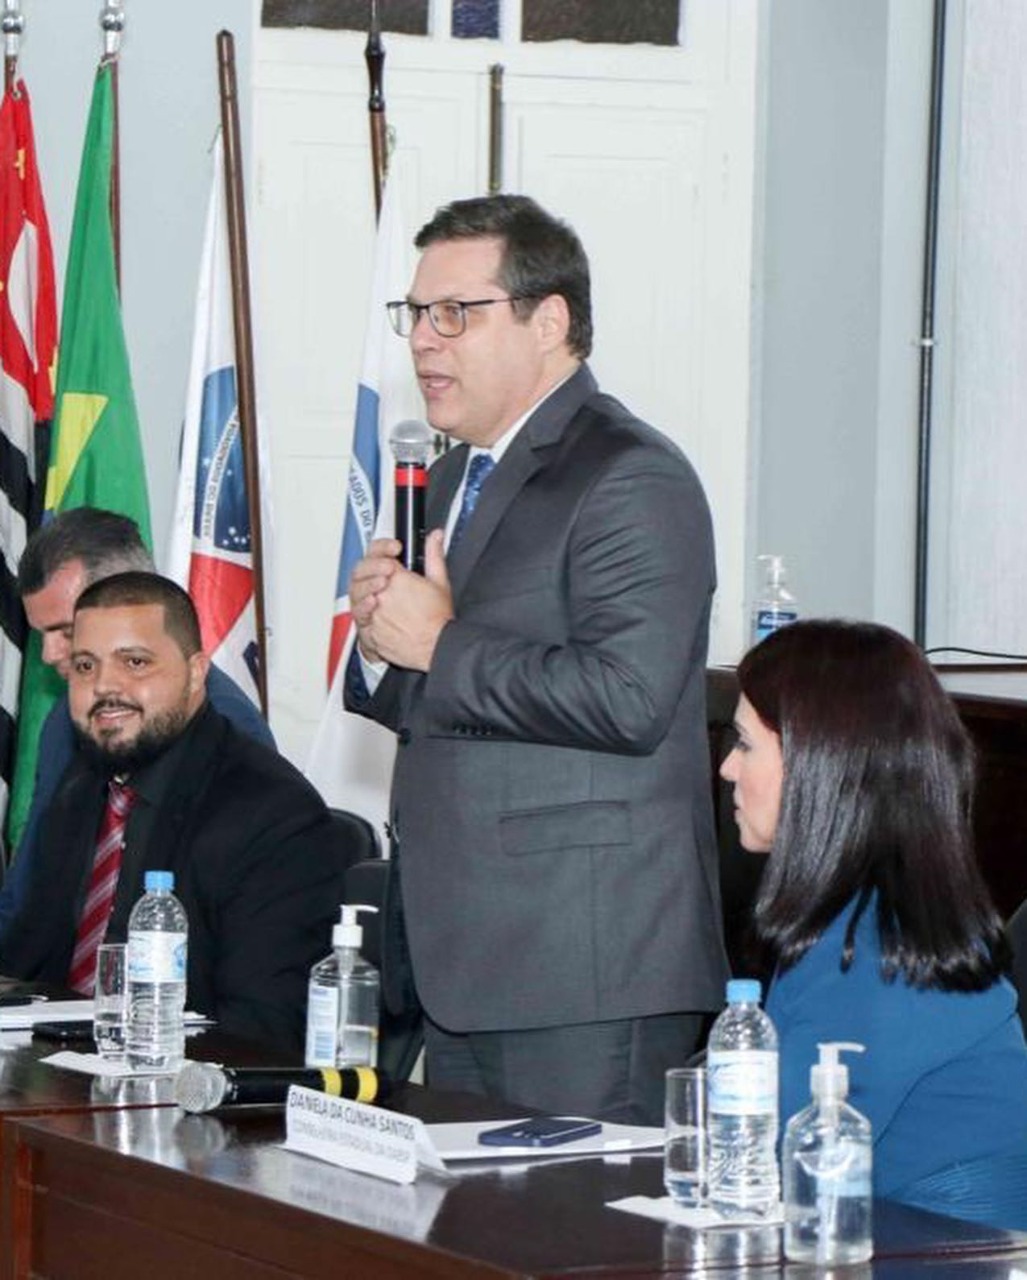 OAB SP participa da cerimônia de posse da diretoria da Subseção de Iguape